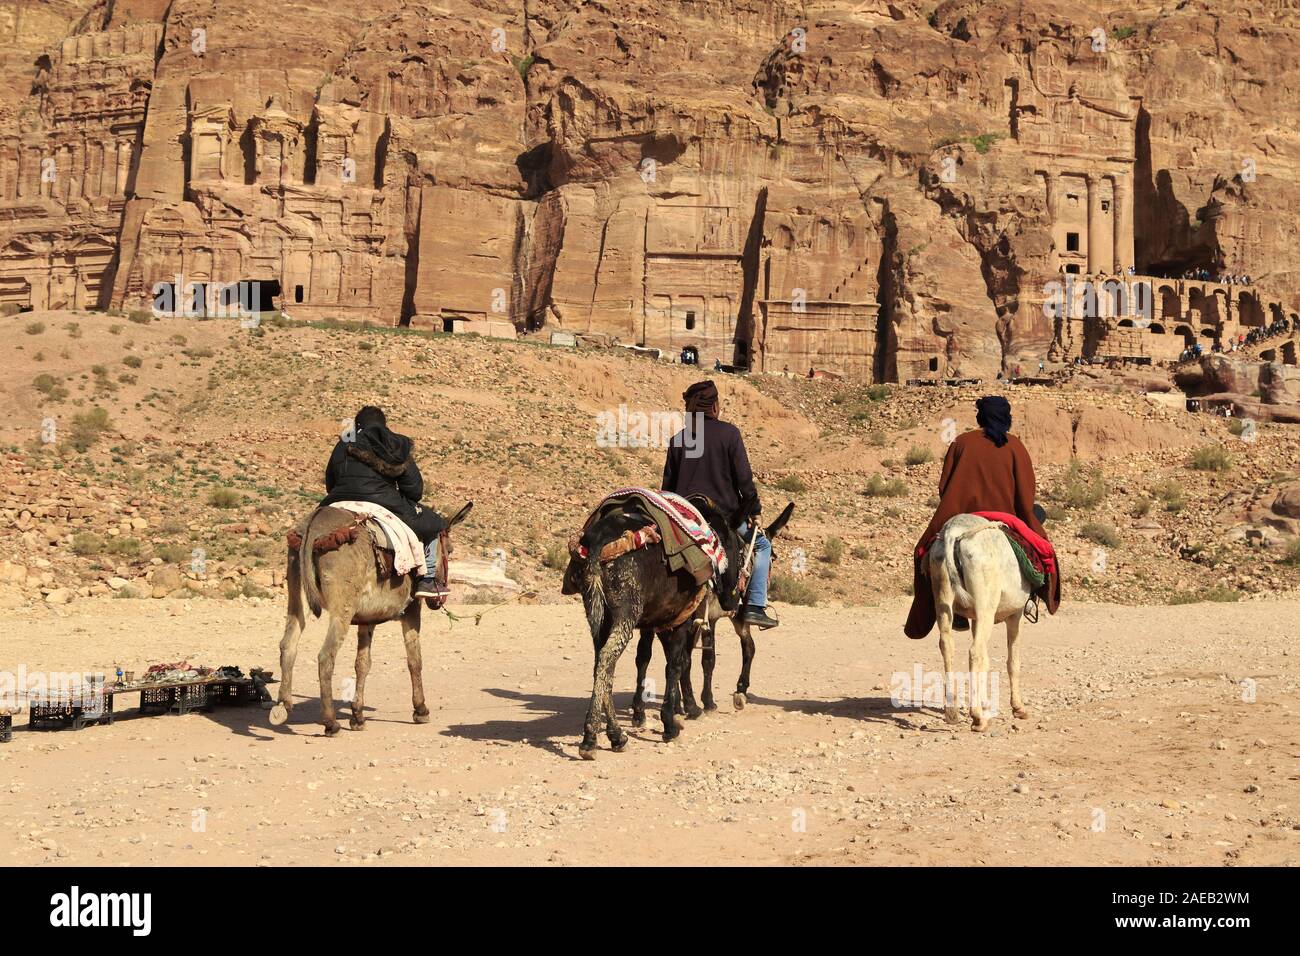 City of Petra in Jordan Stock Photo